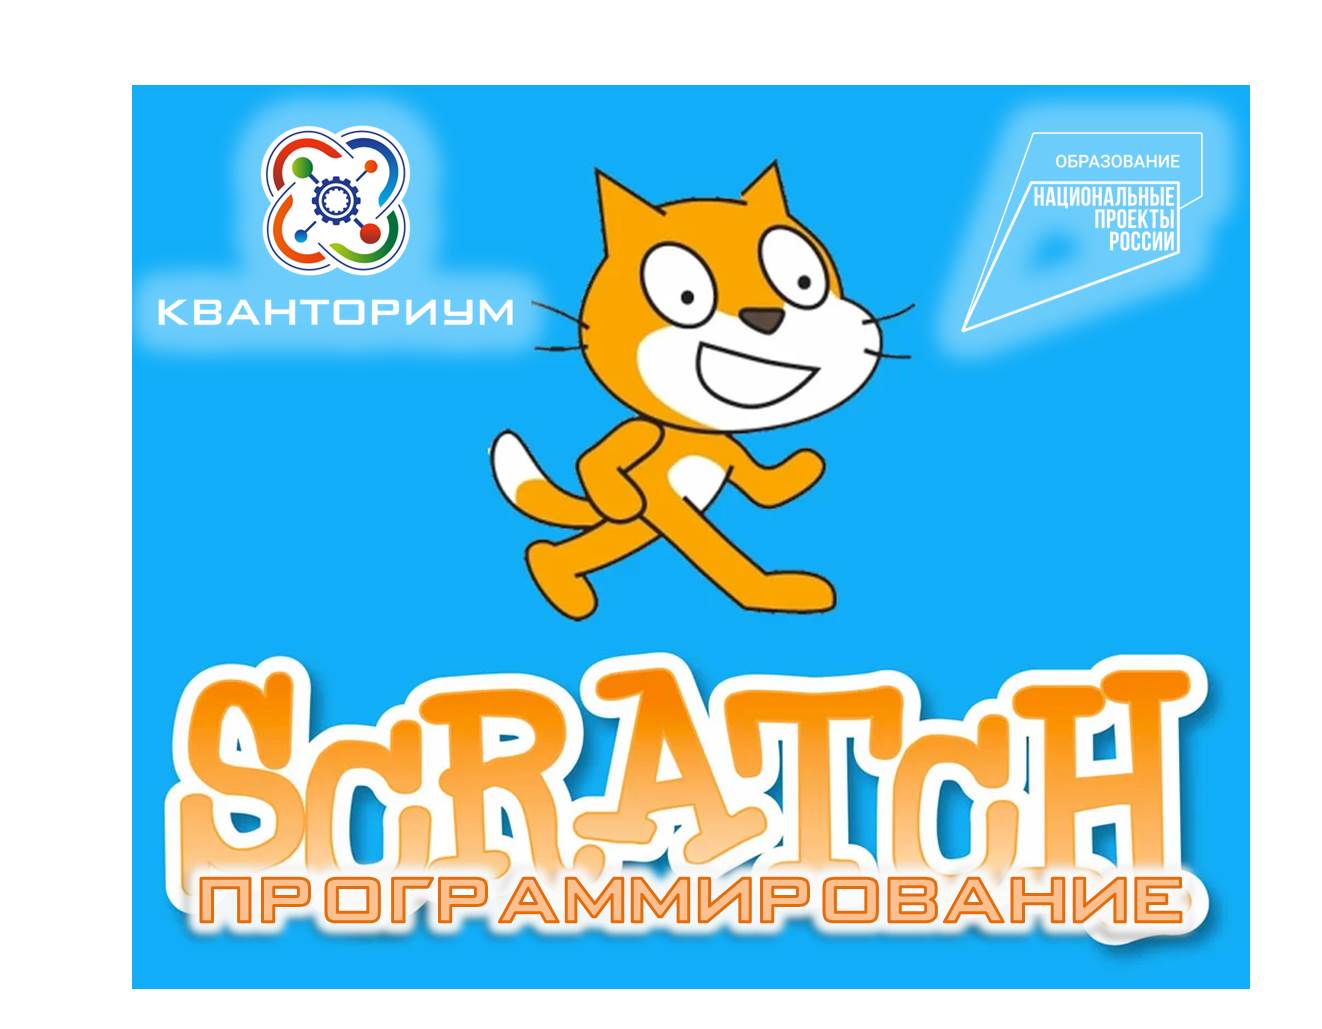 Техническое направление: Scratch - программирование